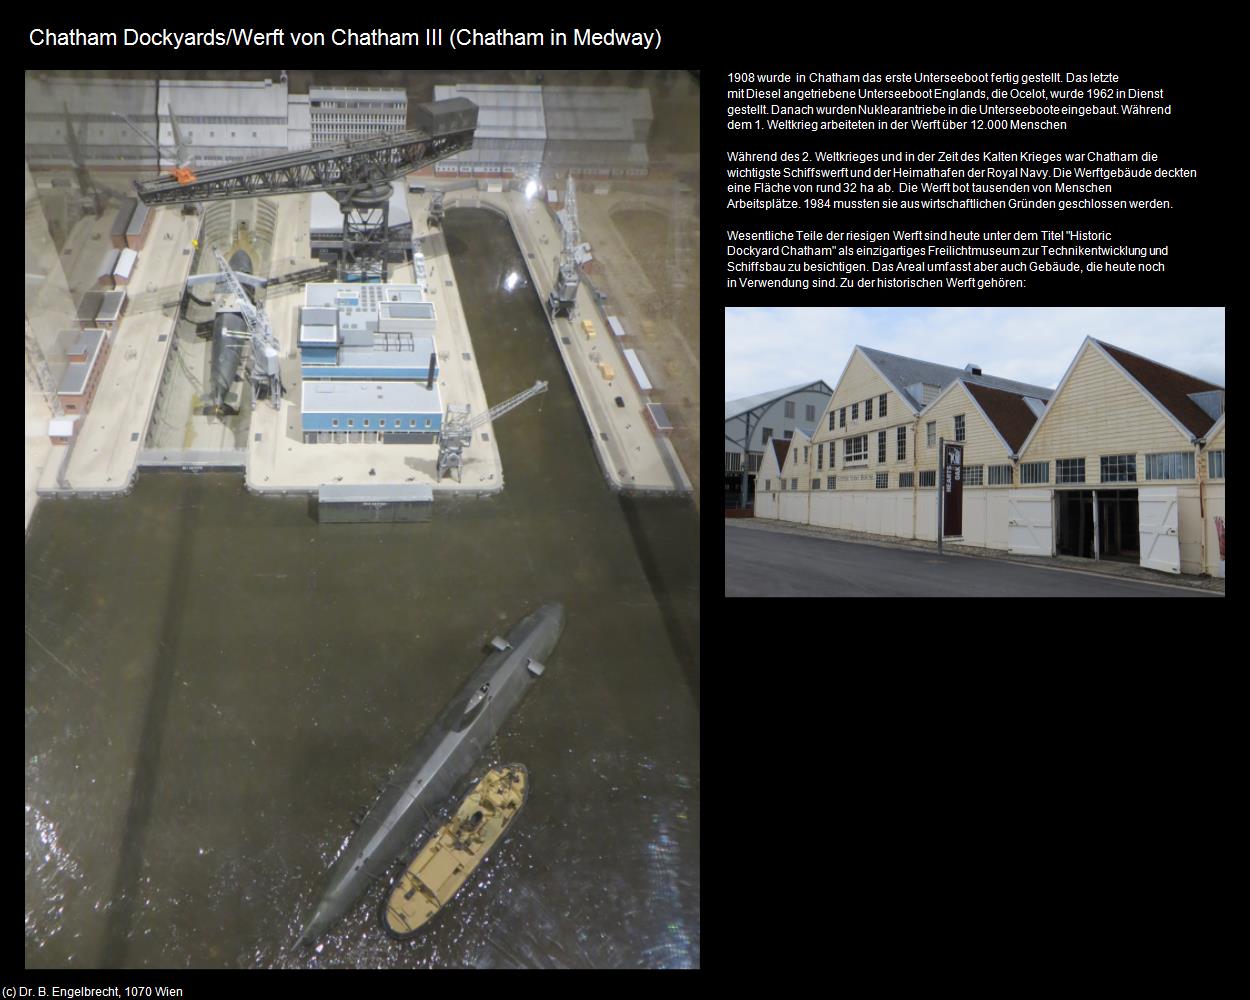 Historic Dockyard/Werft von Chatham III  (Chatham in Medway, England) in Kulturatlas-ENGLAND und WALES